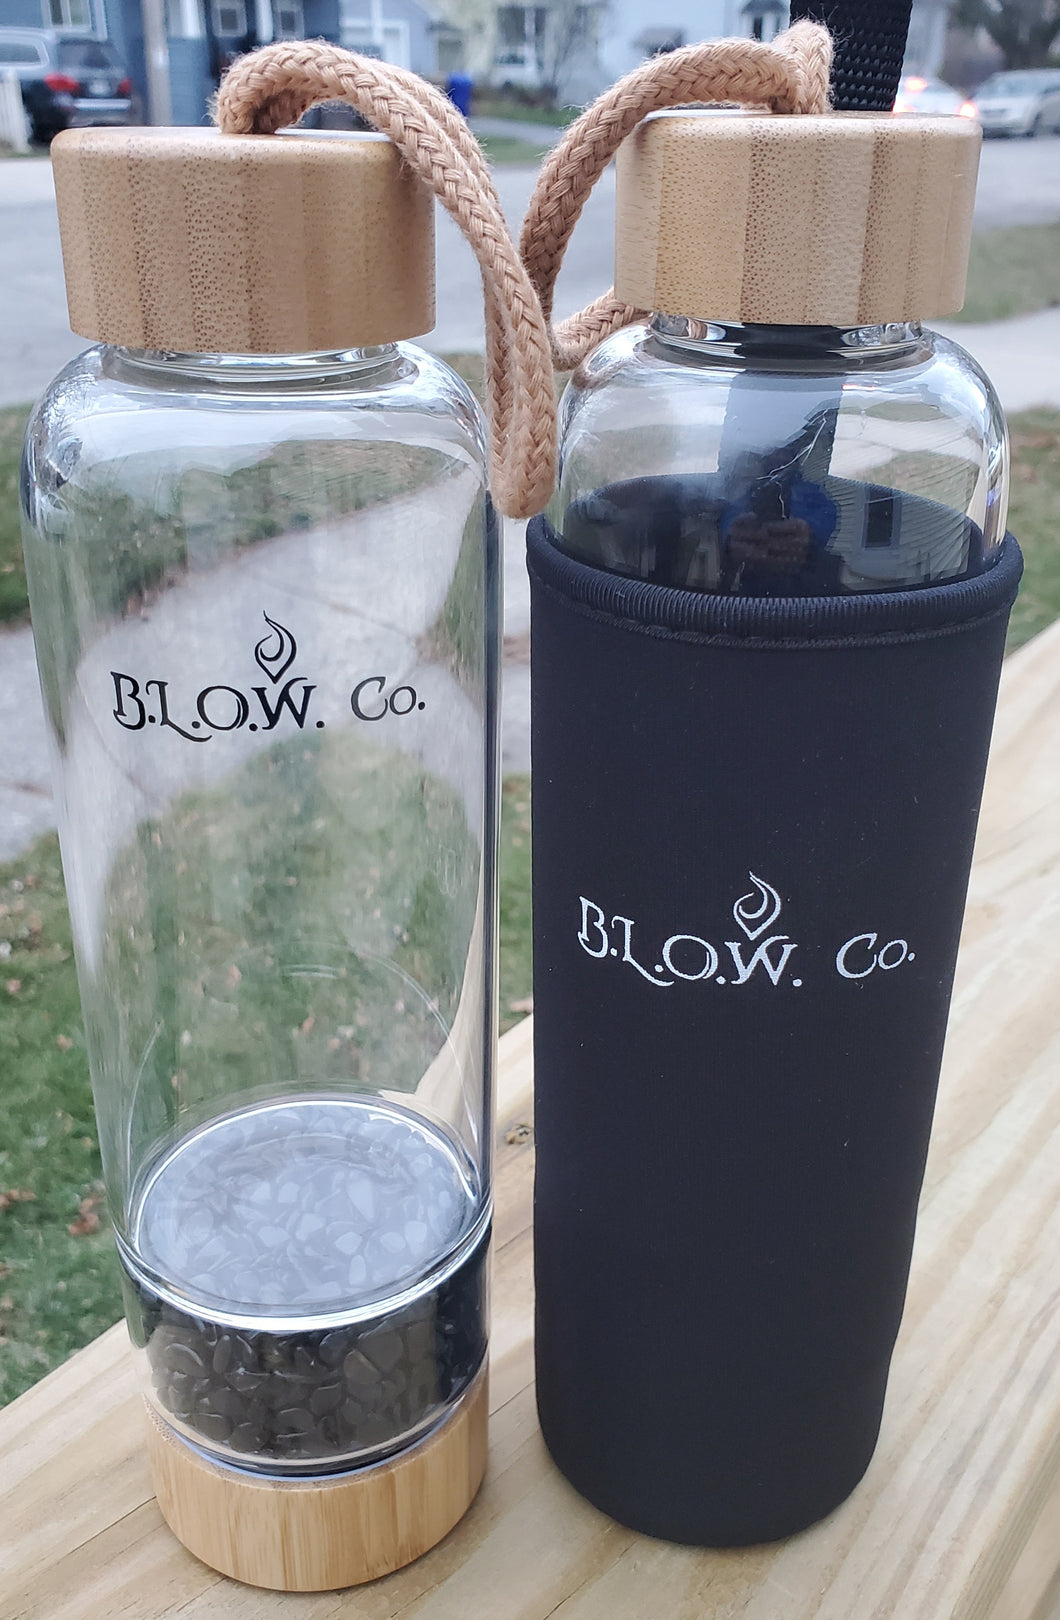 B.L.O.W. Co. Black Obsidian Glass Crystal Water Bottle